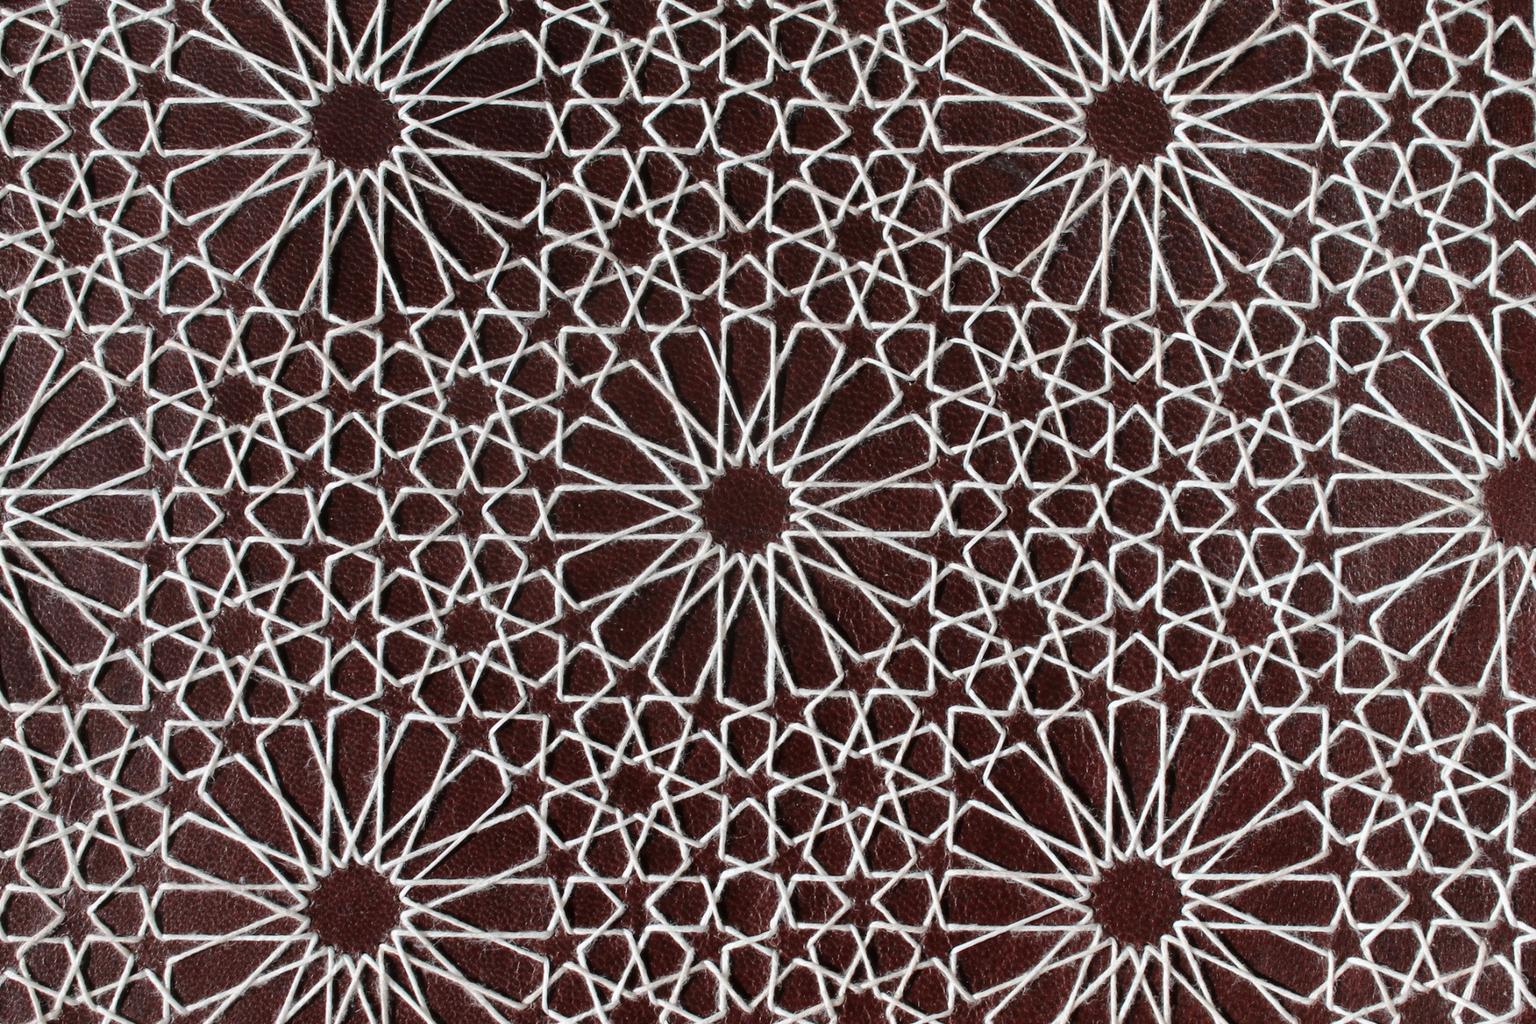 Image for entry 'Alhambra string art'